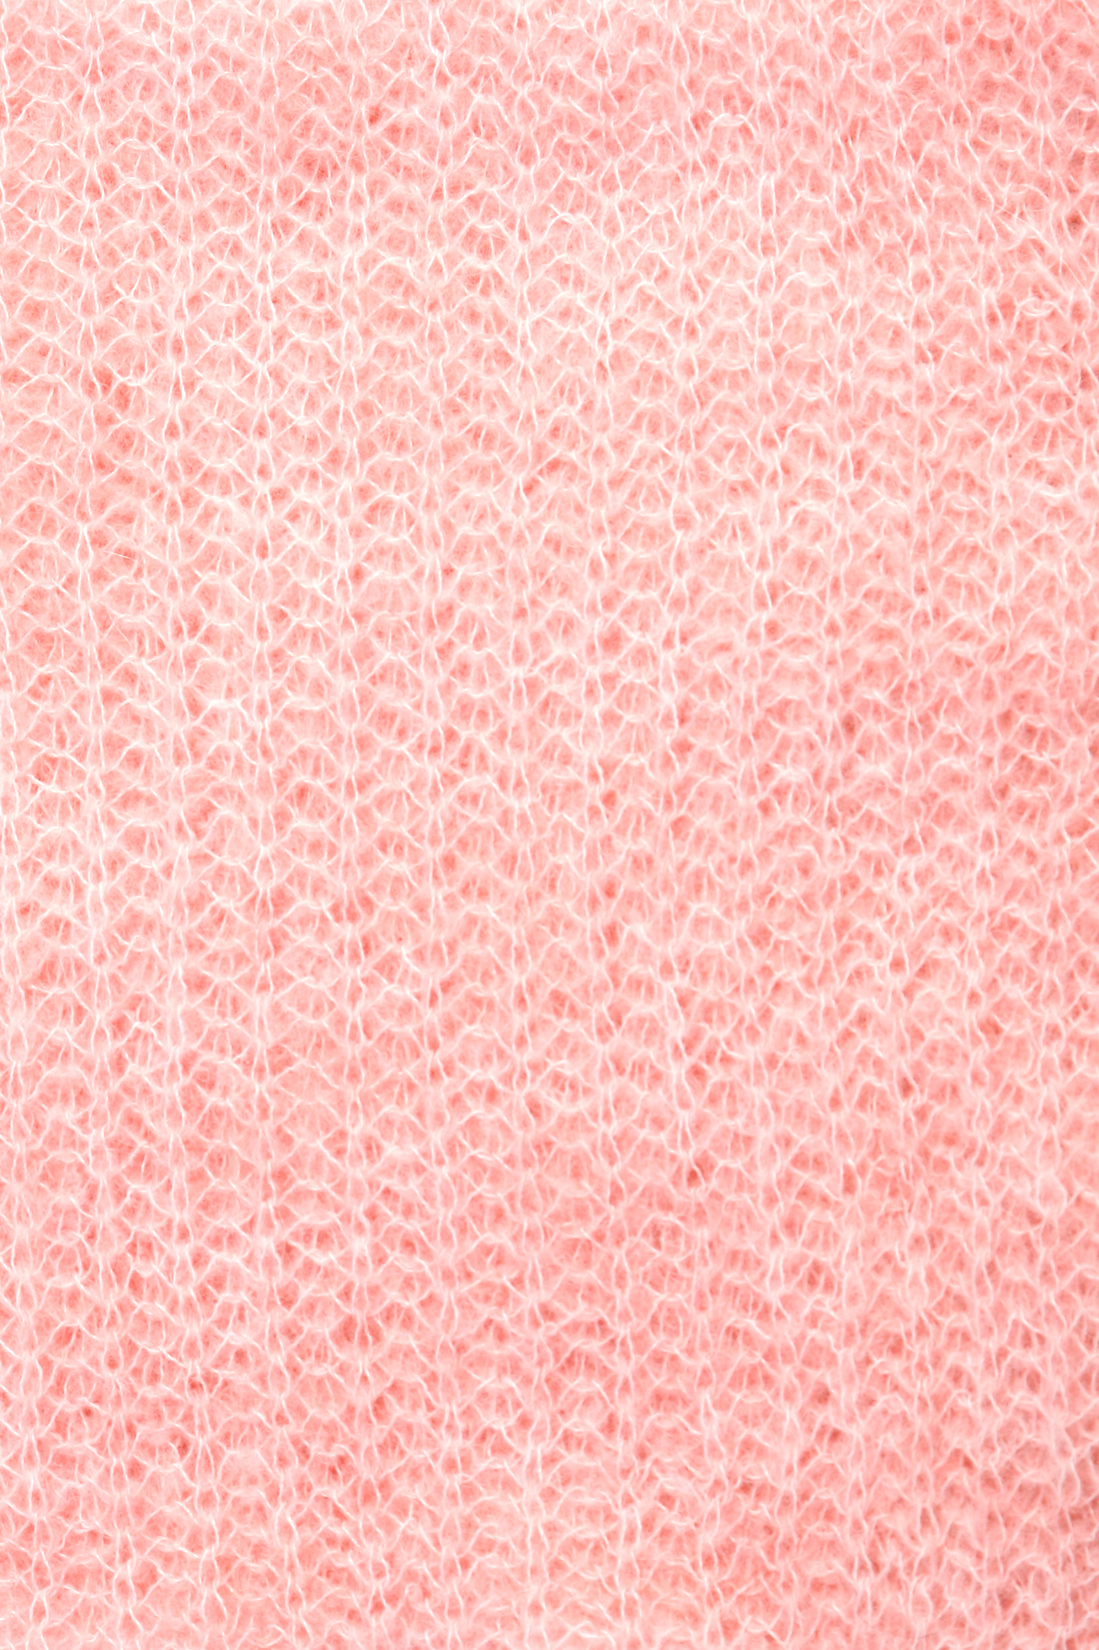 Шарф-снуд с мохером и альпакой (арт. baon B358553), размер Без/раз, цвет розовый Шарф-снуд с мохером и альпакой (арт. baon B358553) - фото 3